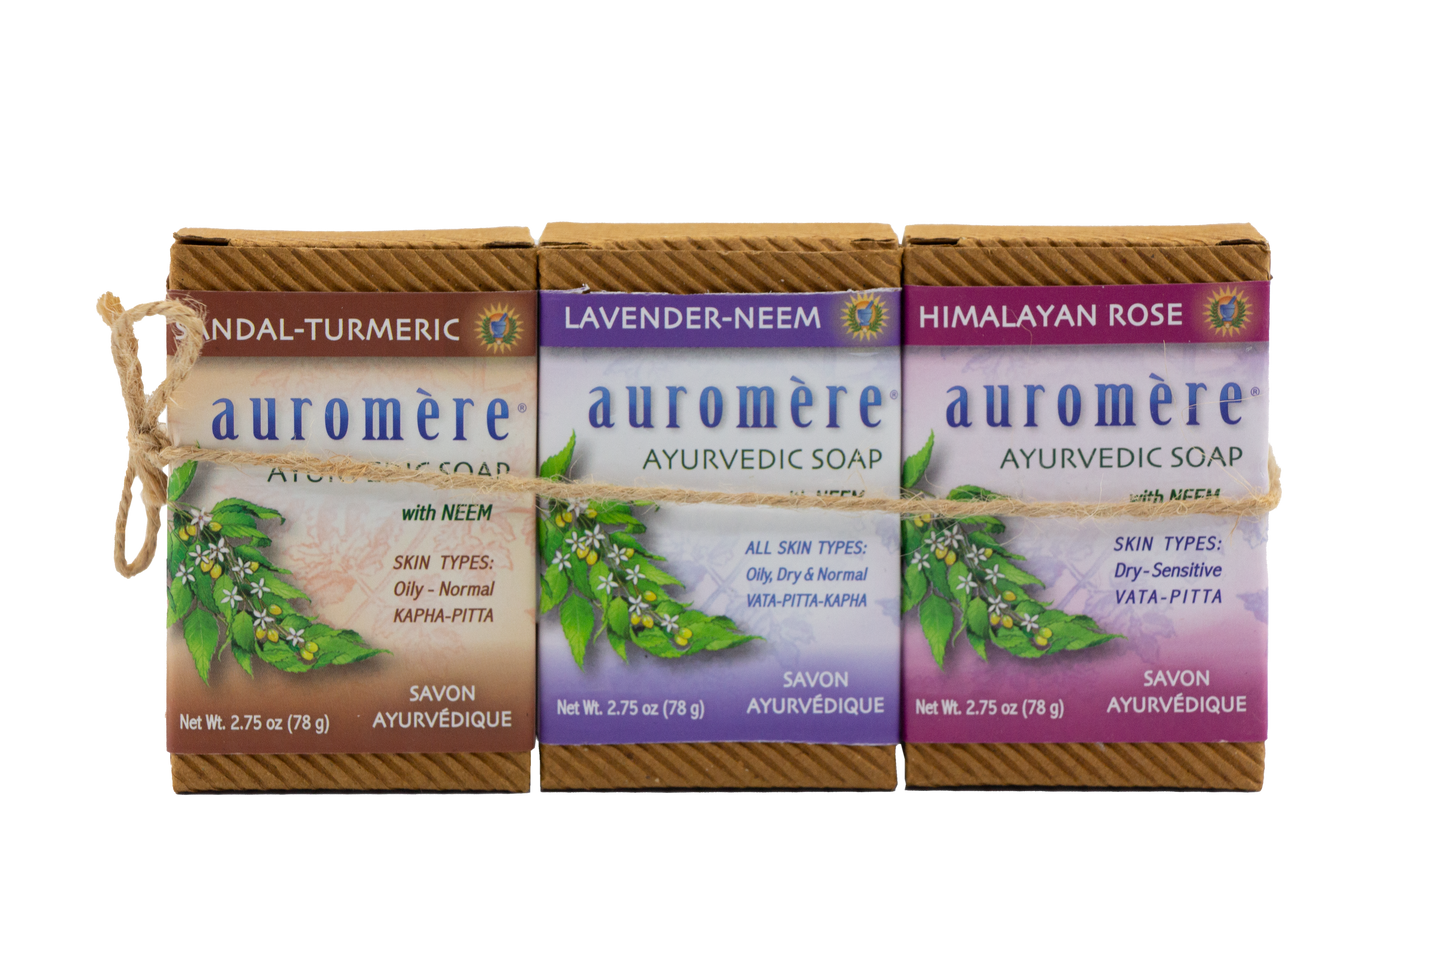 Auromere 3-Pack- Sandal Tumeric, Lavender Neem, Himalayan Rose